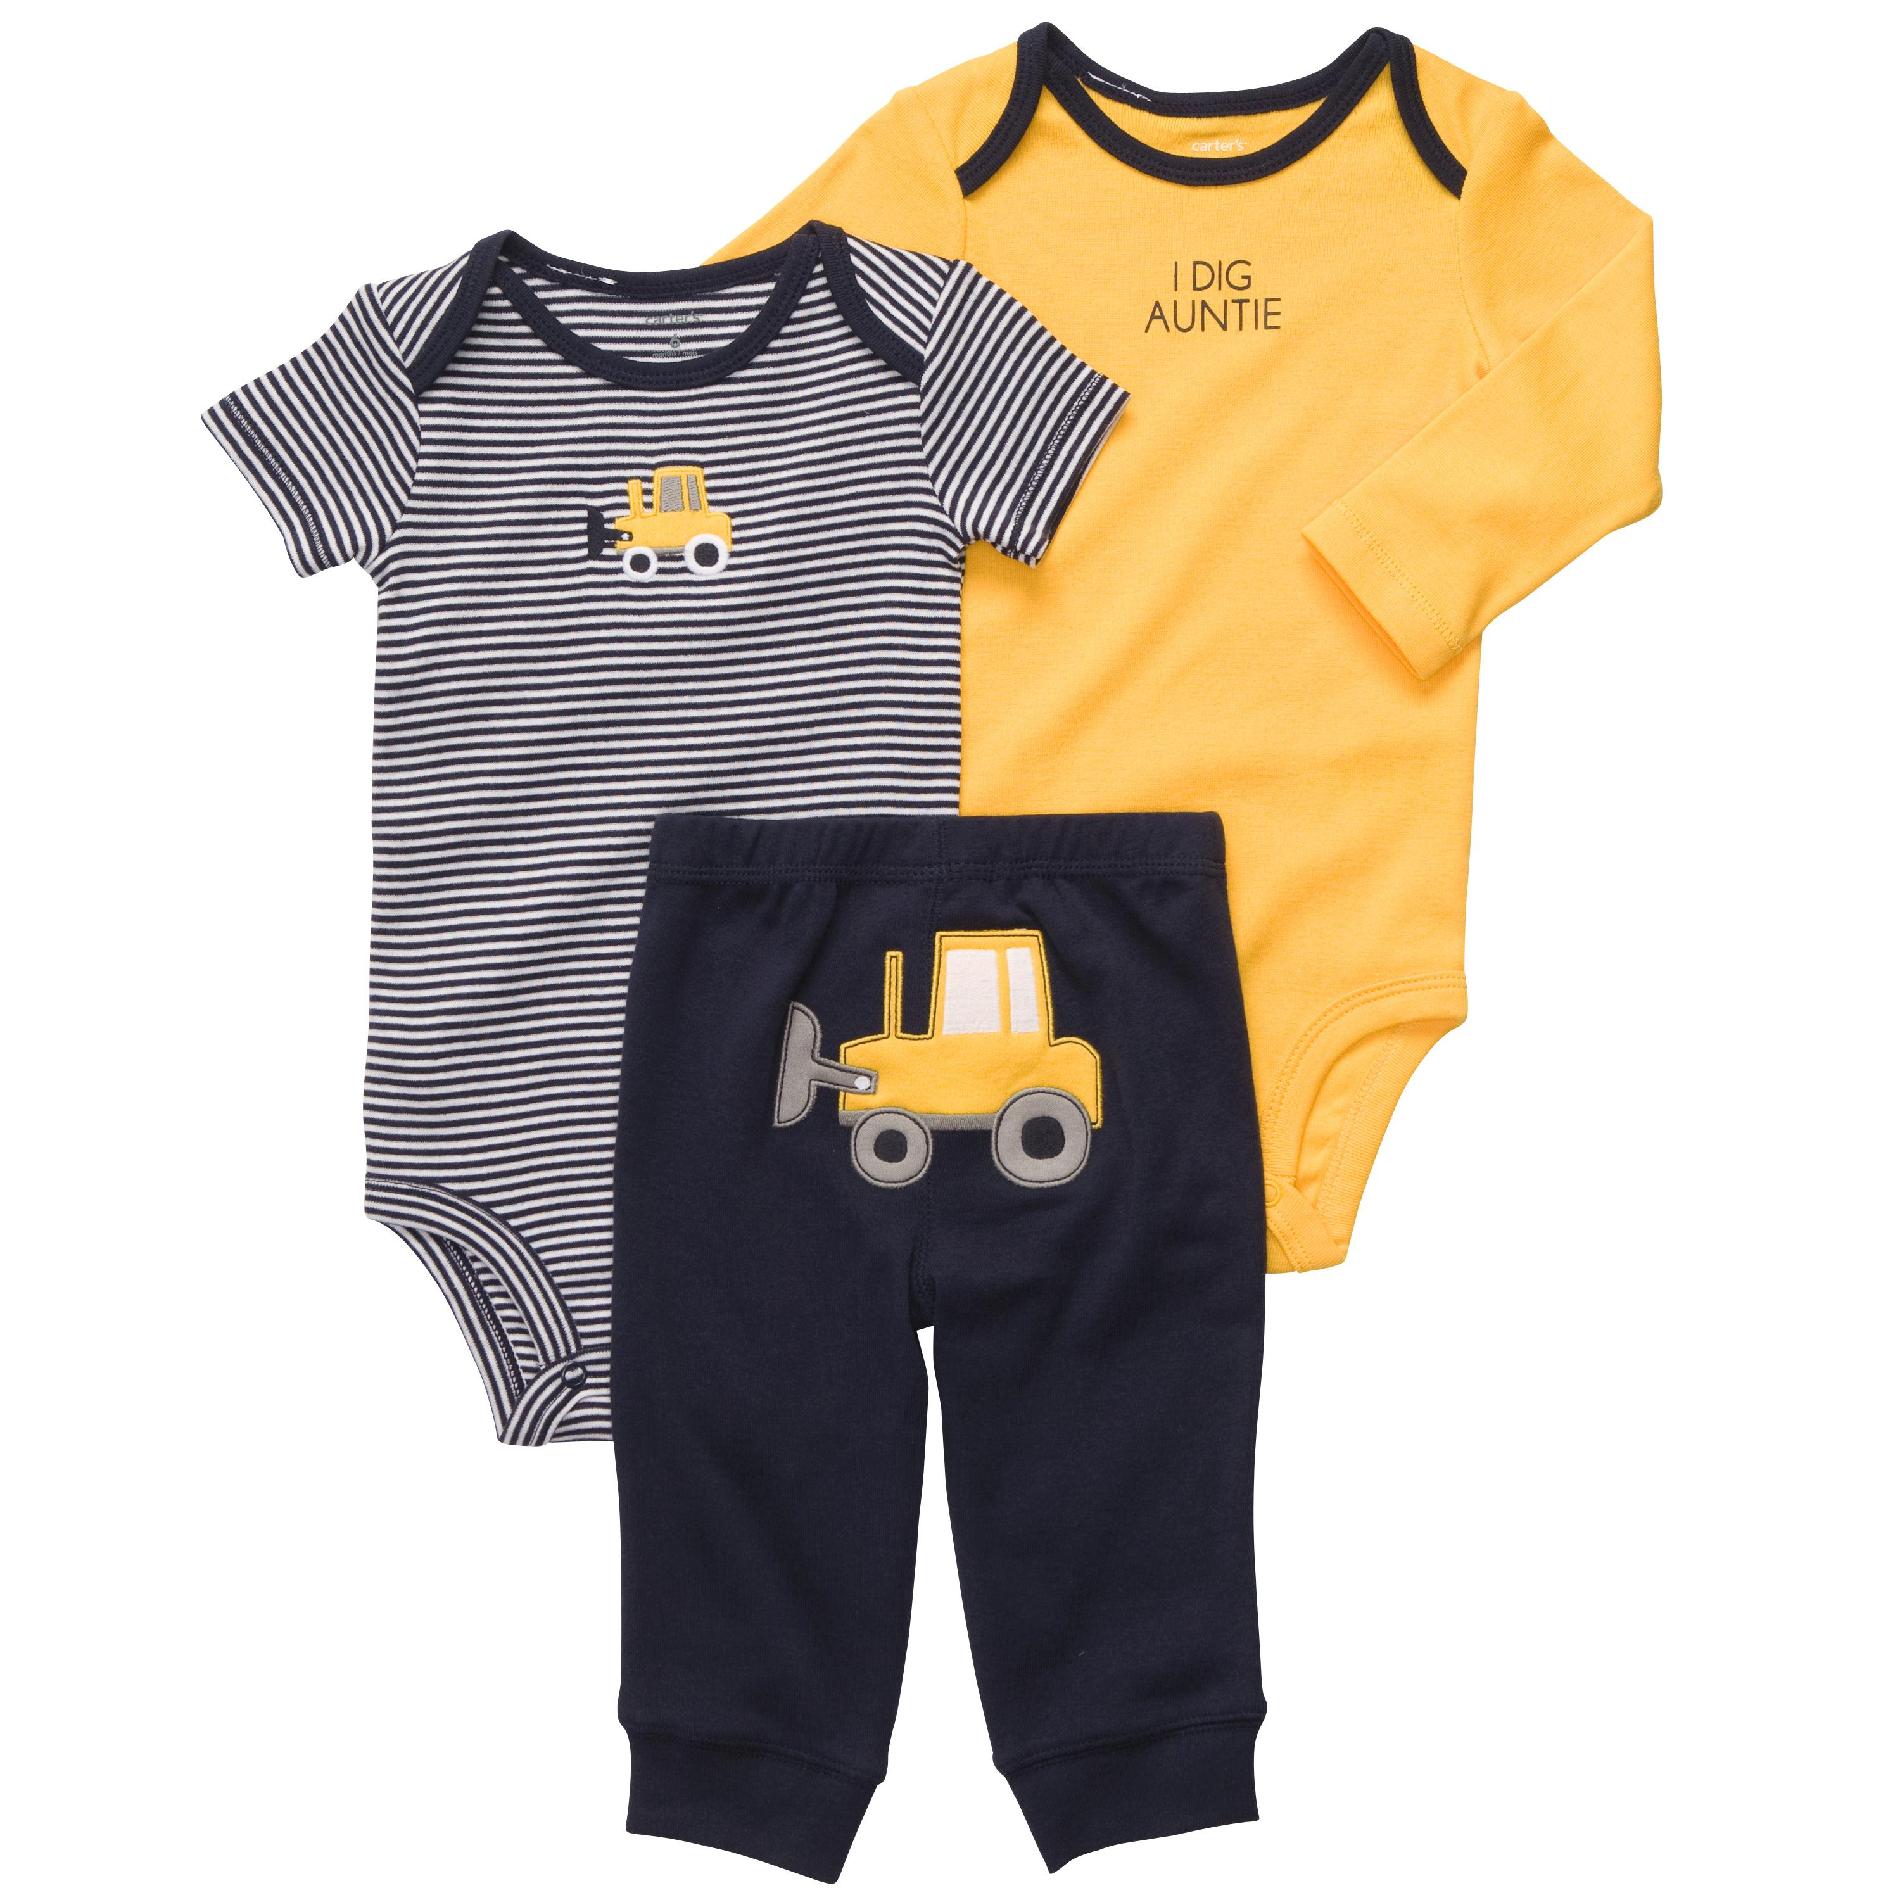 Carter's Newborn & Infant Boy's 3Pc Bodysuits & Pants - Truck